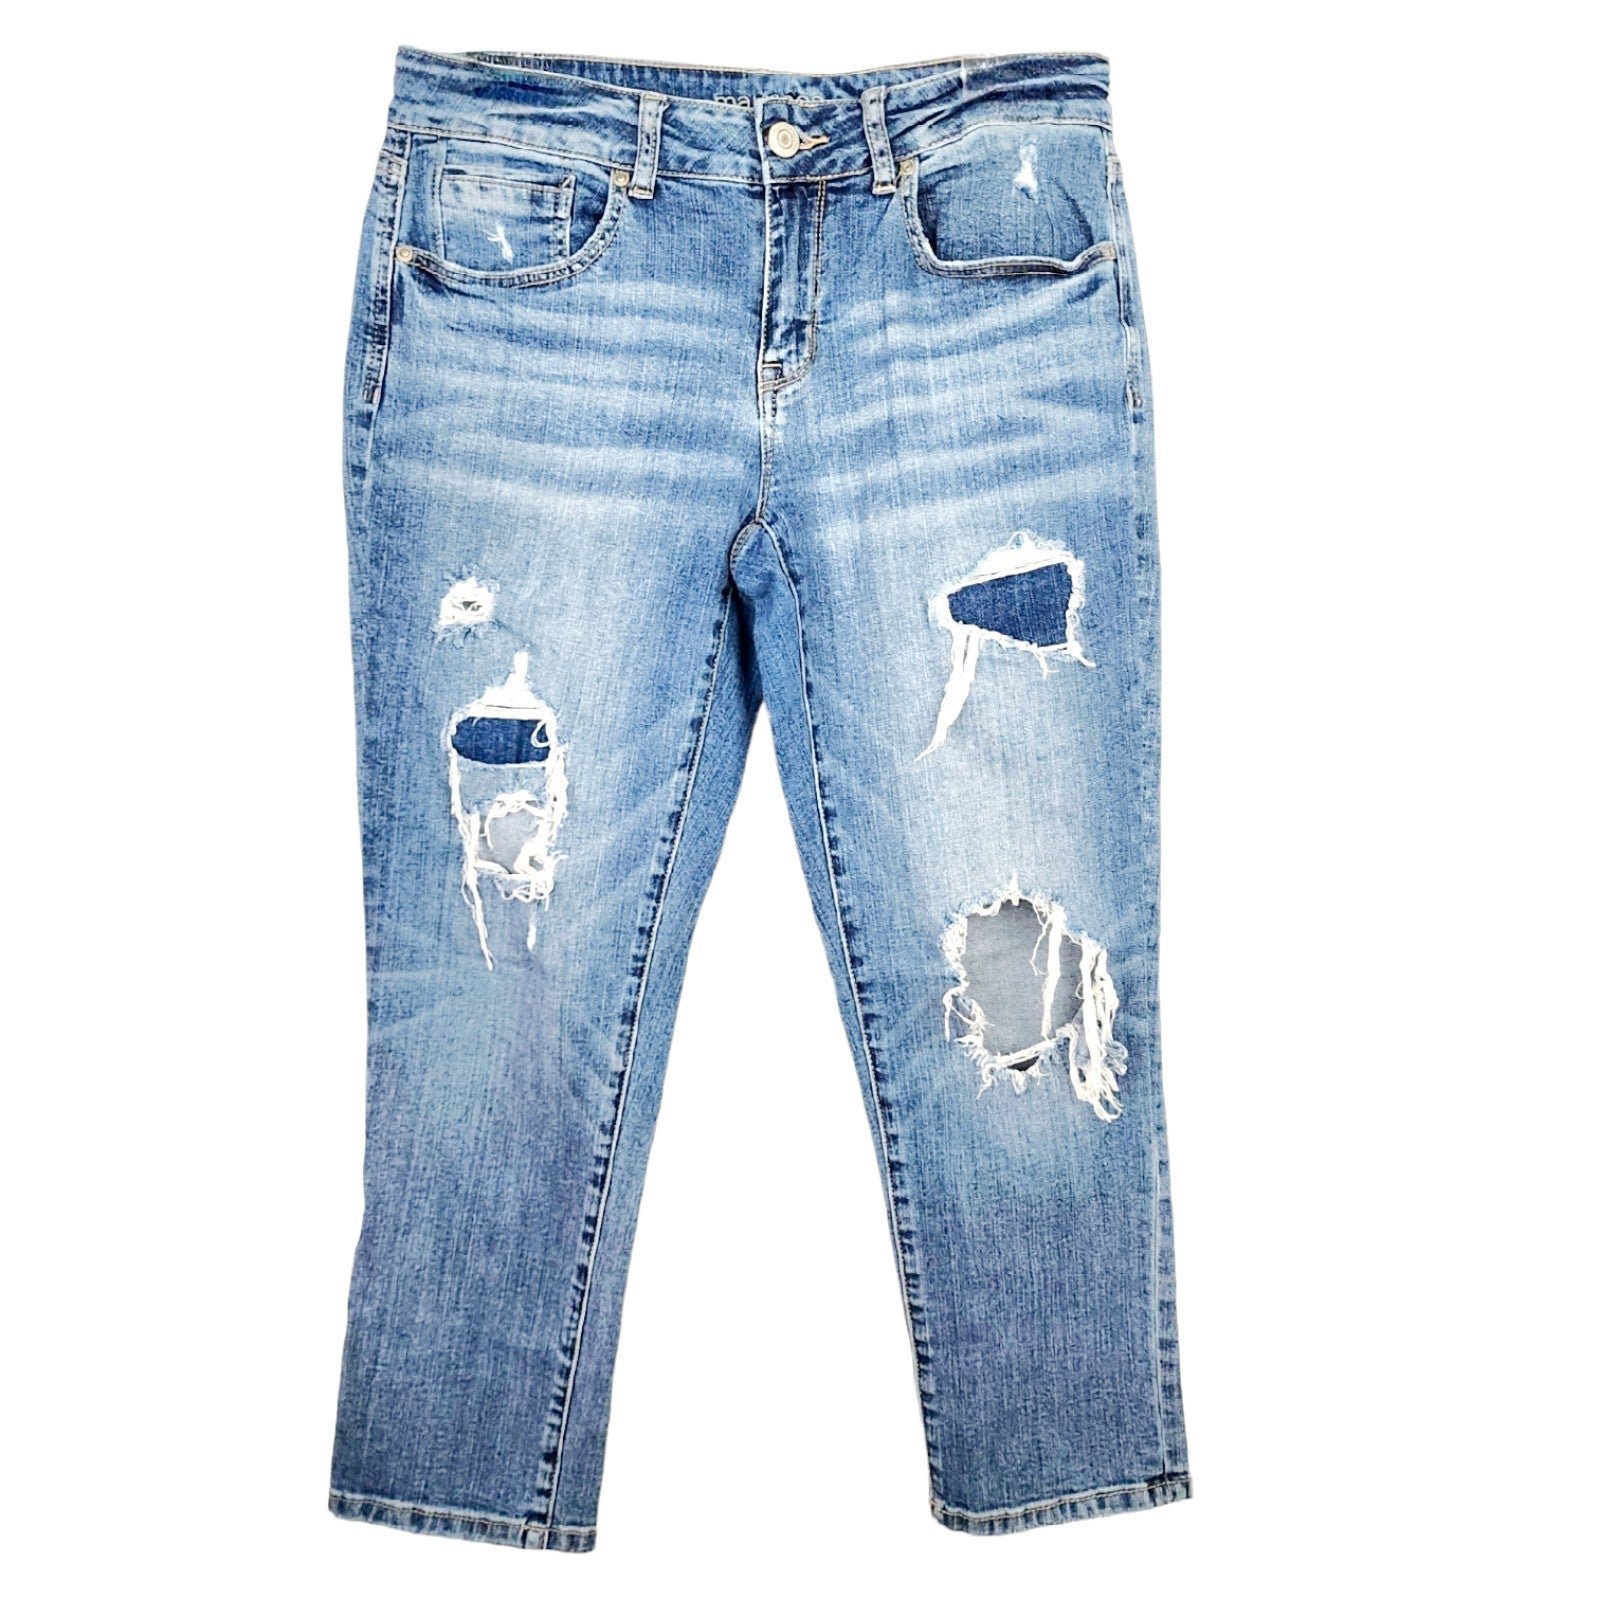 Elegant Maurices 7/8 Distressed Denim Capri Blue Jeans Stretch FVNfmHK3b for sale